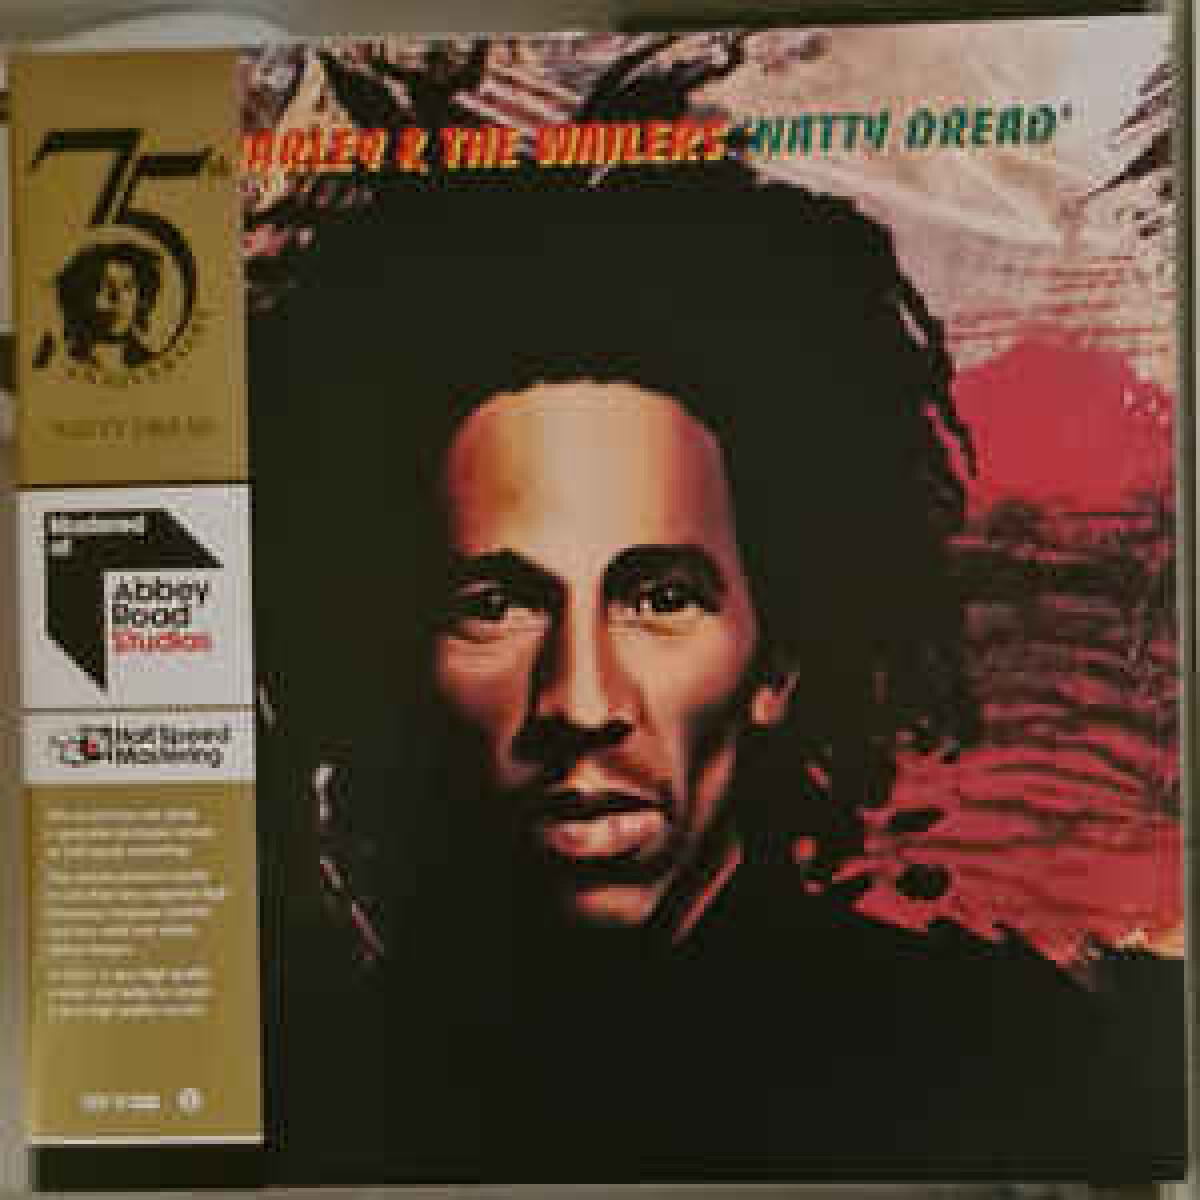 Bob Marley & The Wailers-natty Dread (half-speed) 